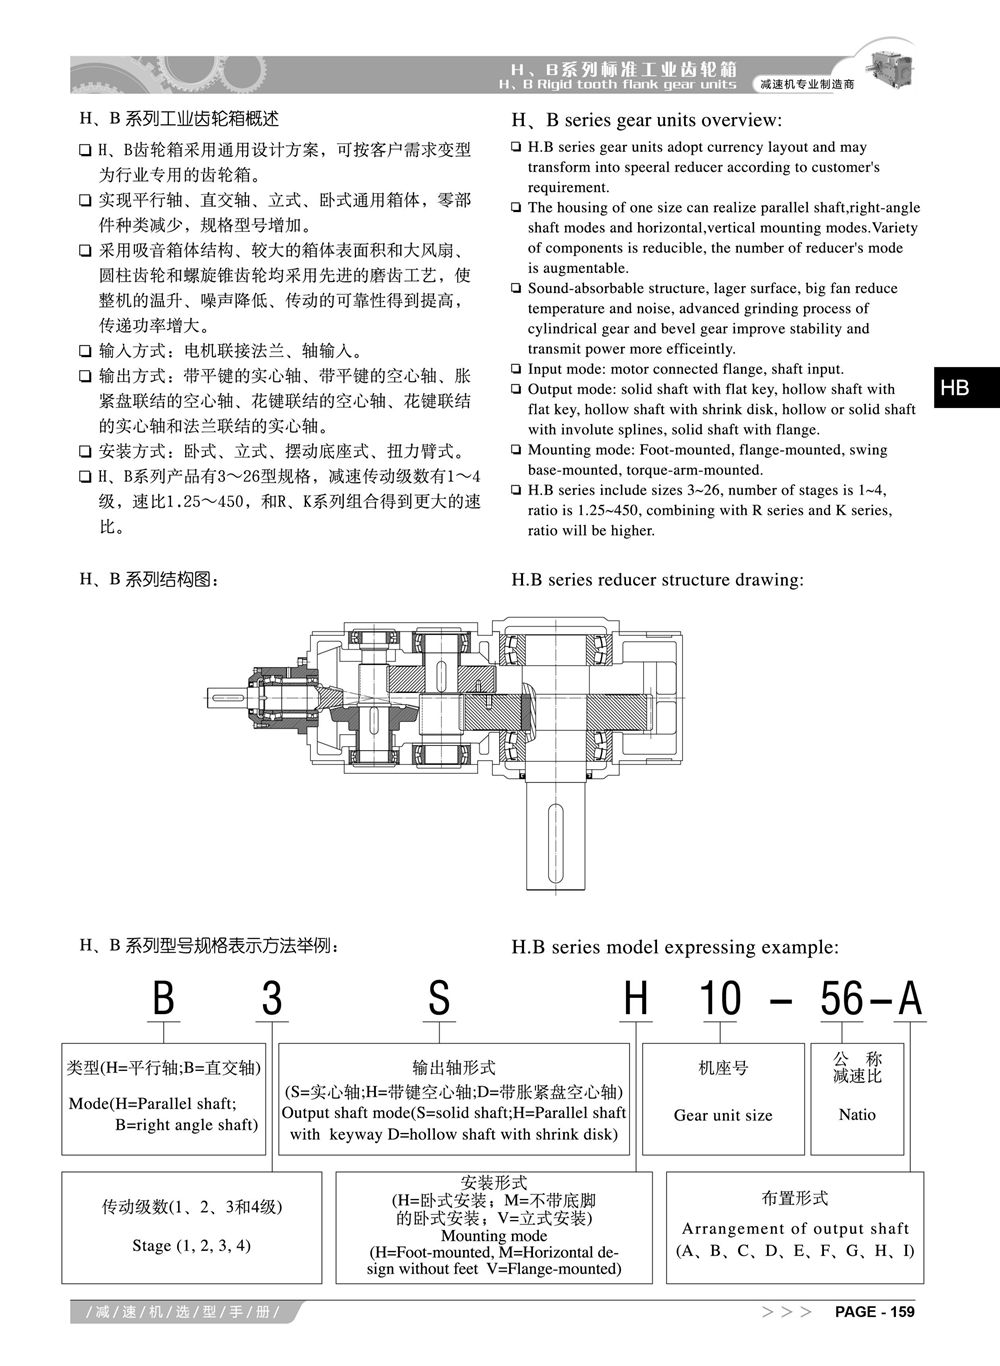 6-阿尔法HB系列减速机选型手册_2_副本.jpg